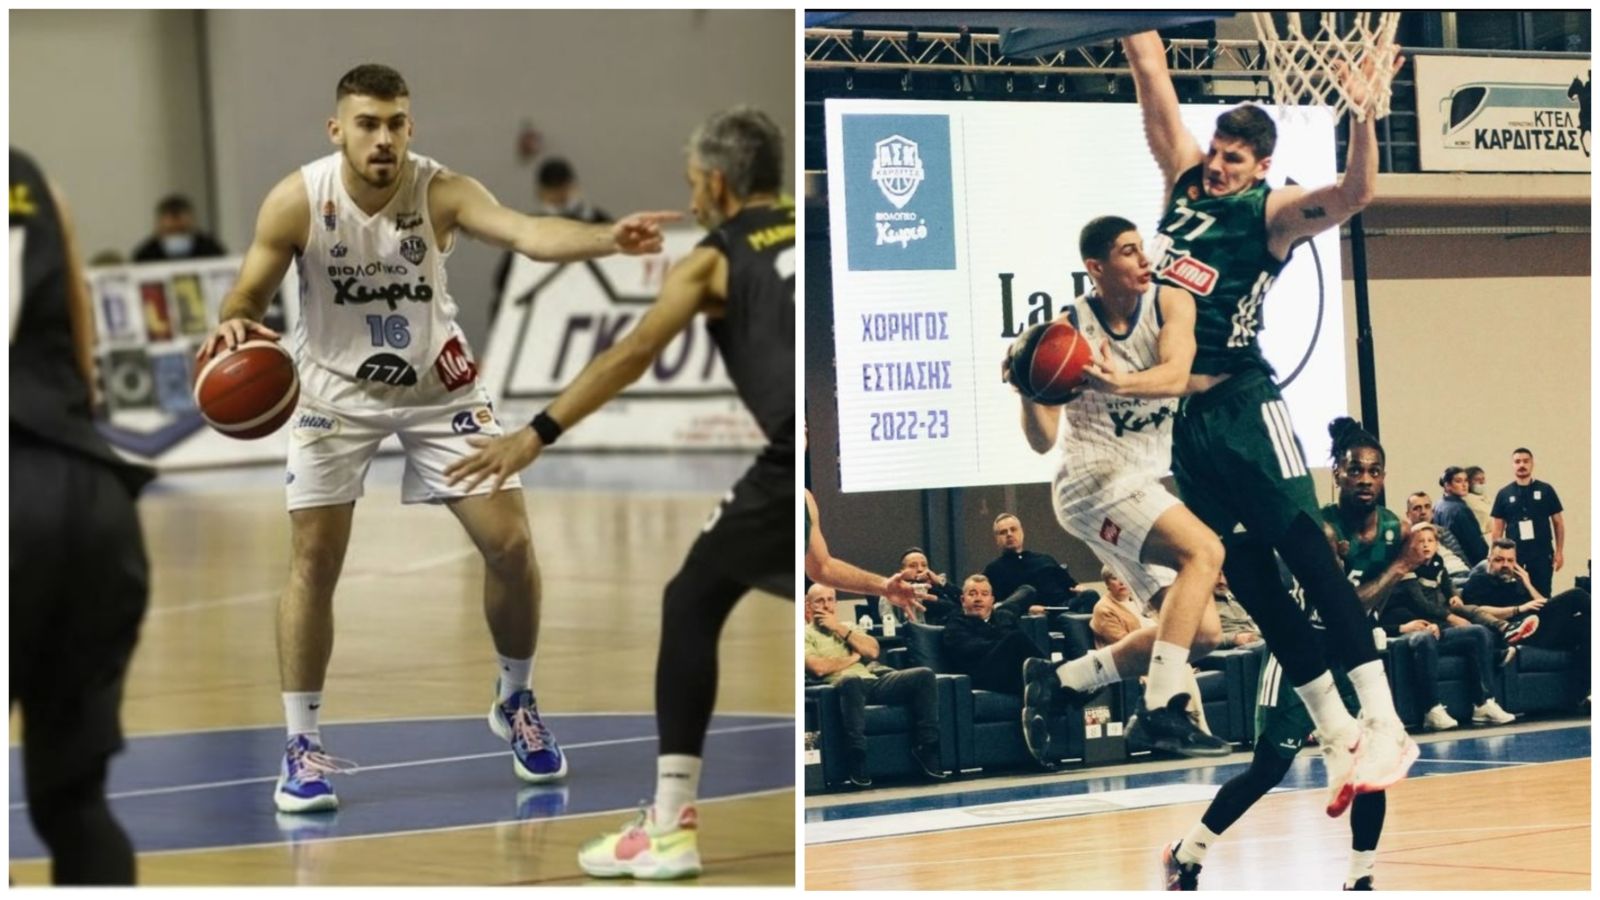 Αλεξιάδης – Τσούκας: Το Σάββατο Basket League, την Κυριακή Γ’ Εθνική!